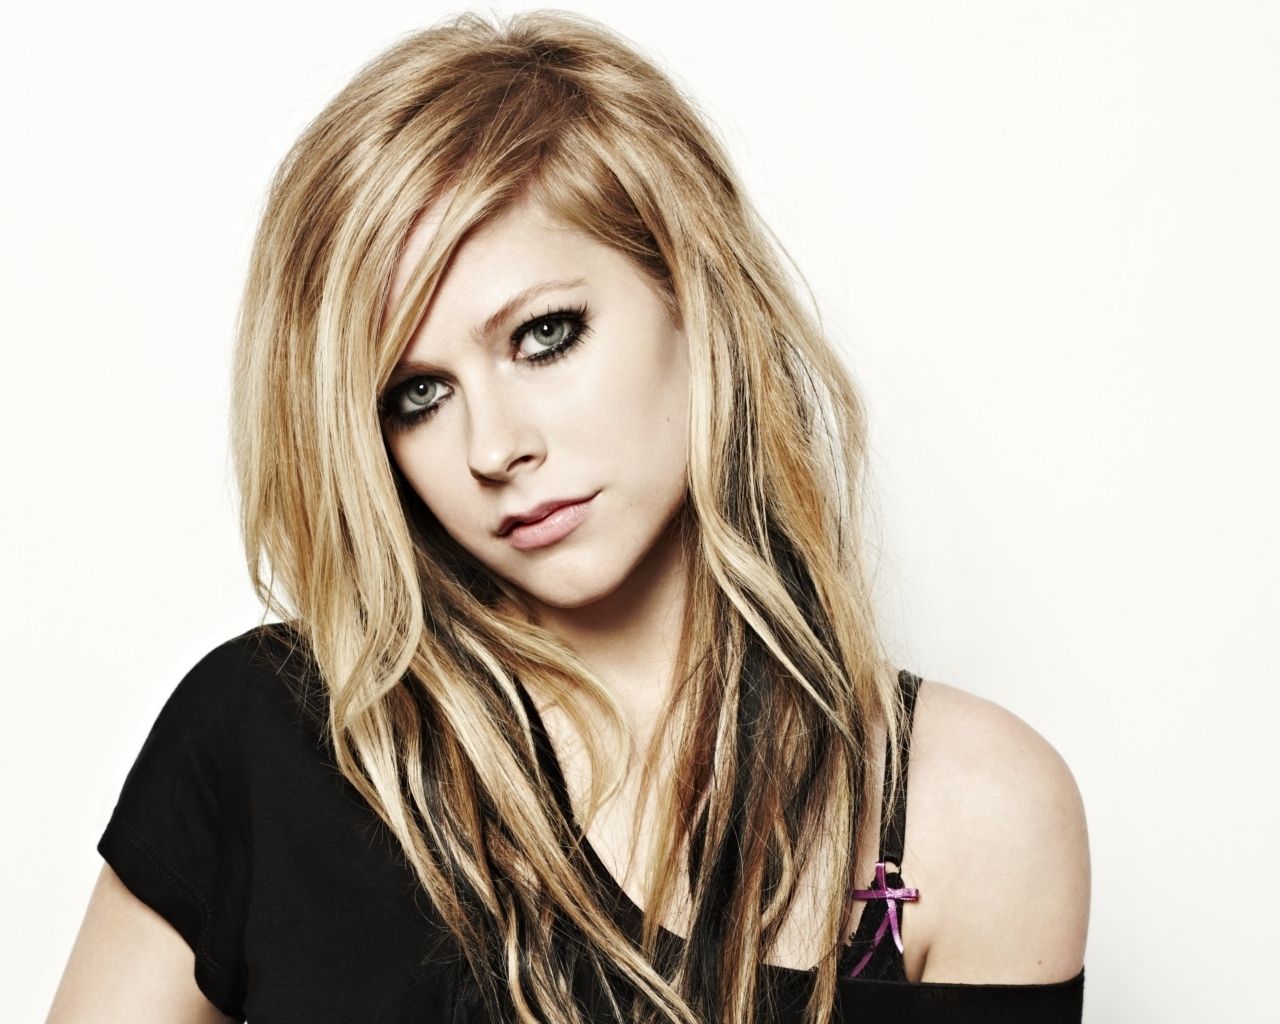 photo Avril-Lavigne-avril-lavigne-22661431-1280-1024.jpg